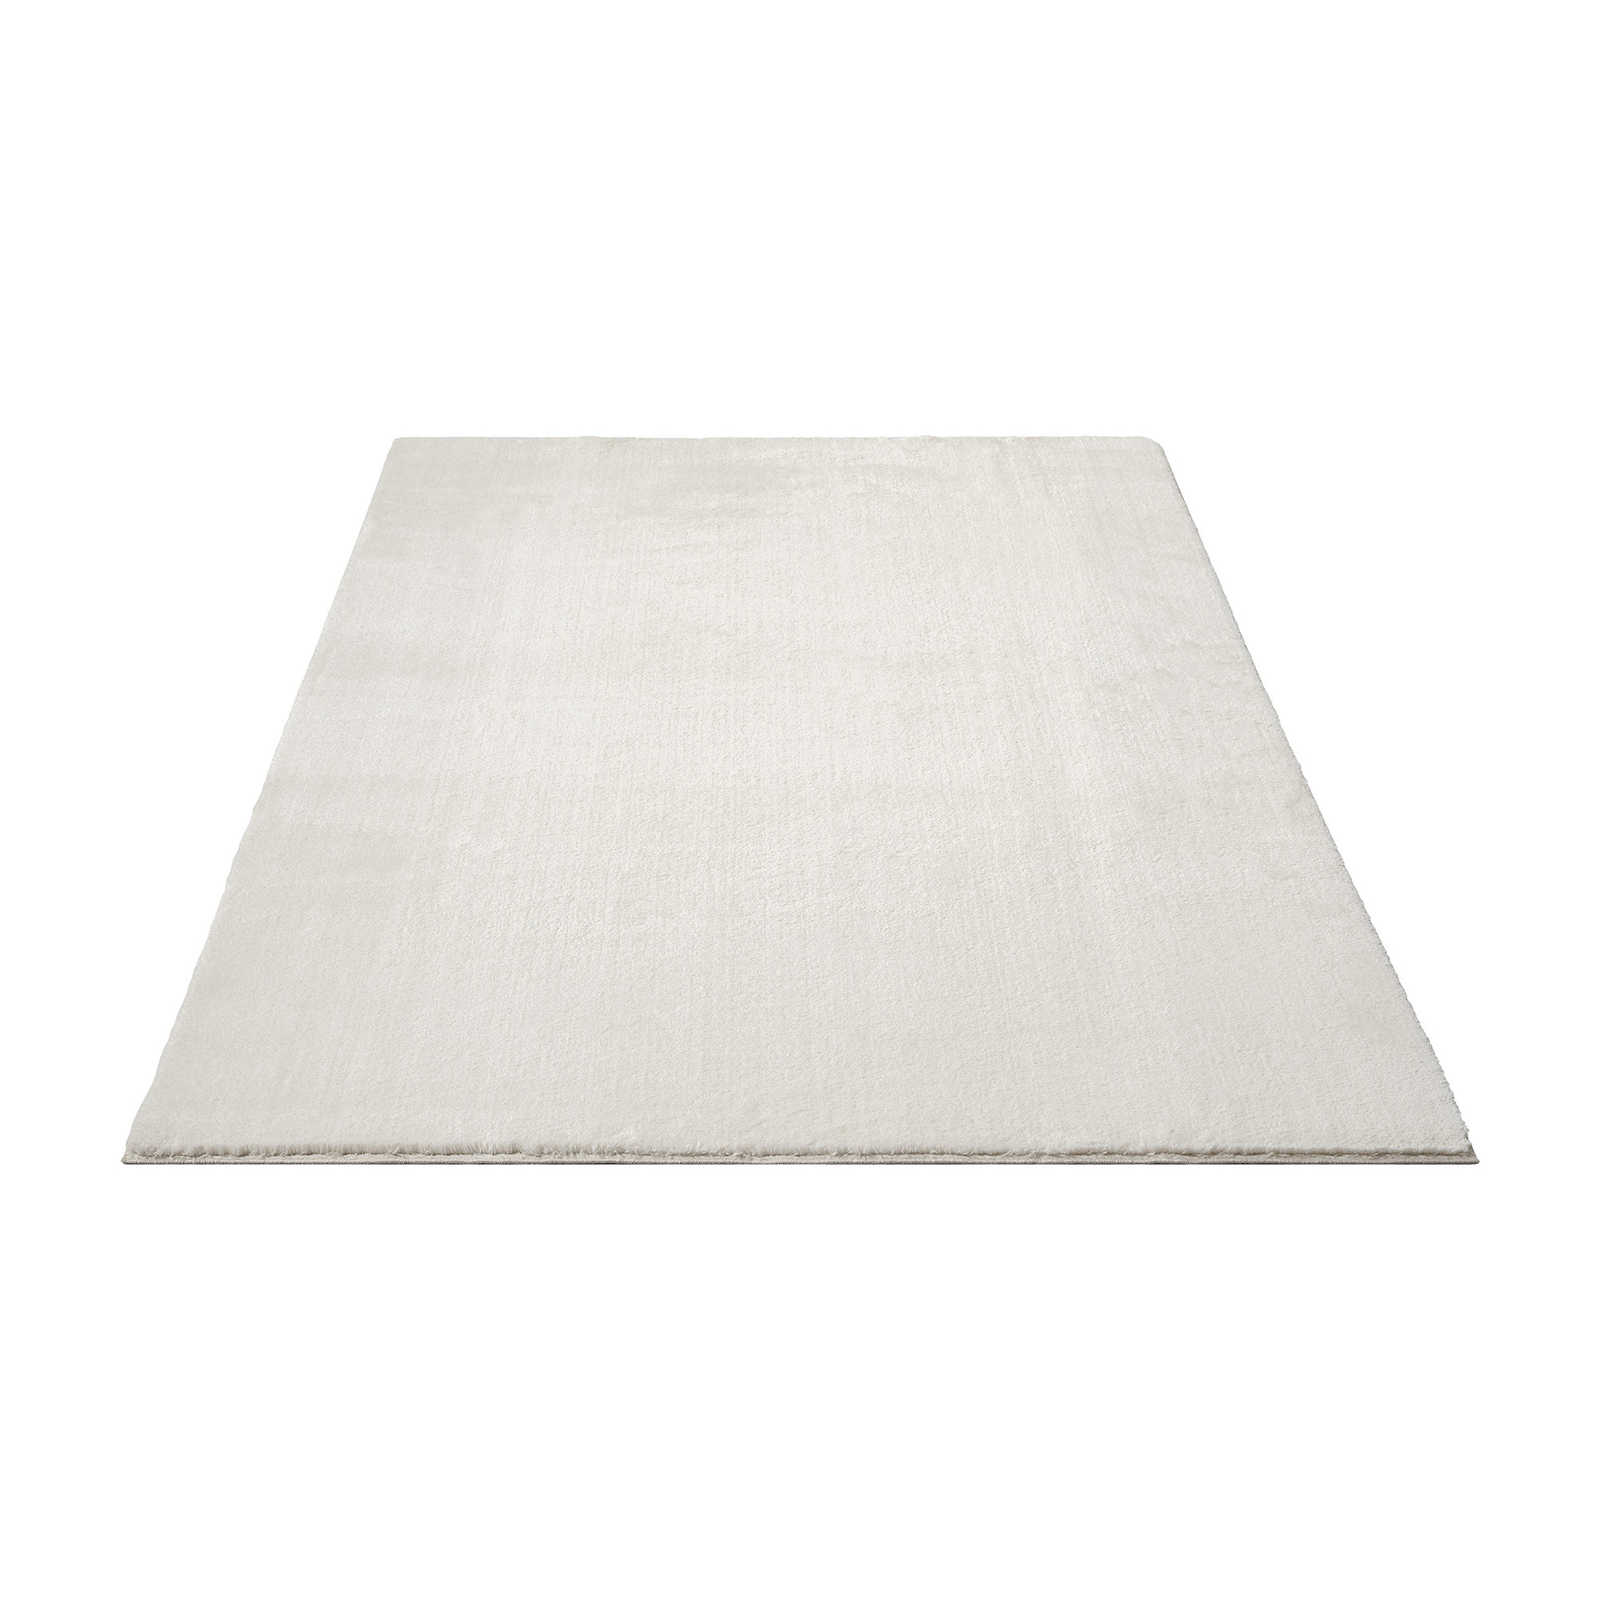 Fashionable high pile carpet in cream - 290 x 200 cm
